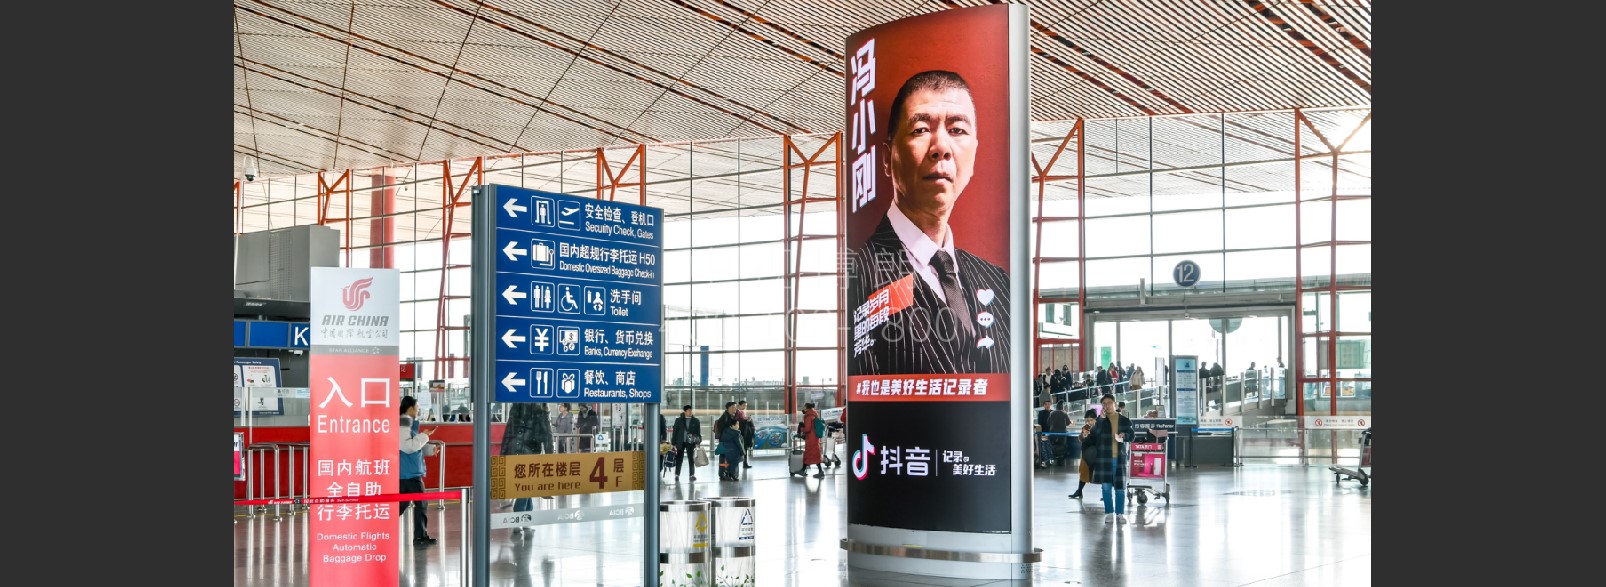 北京首都机场广告-T3出发大厅图腾灯箱J005